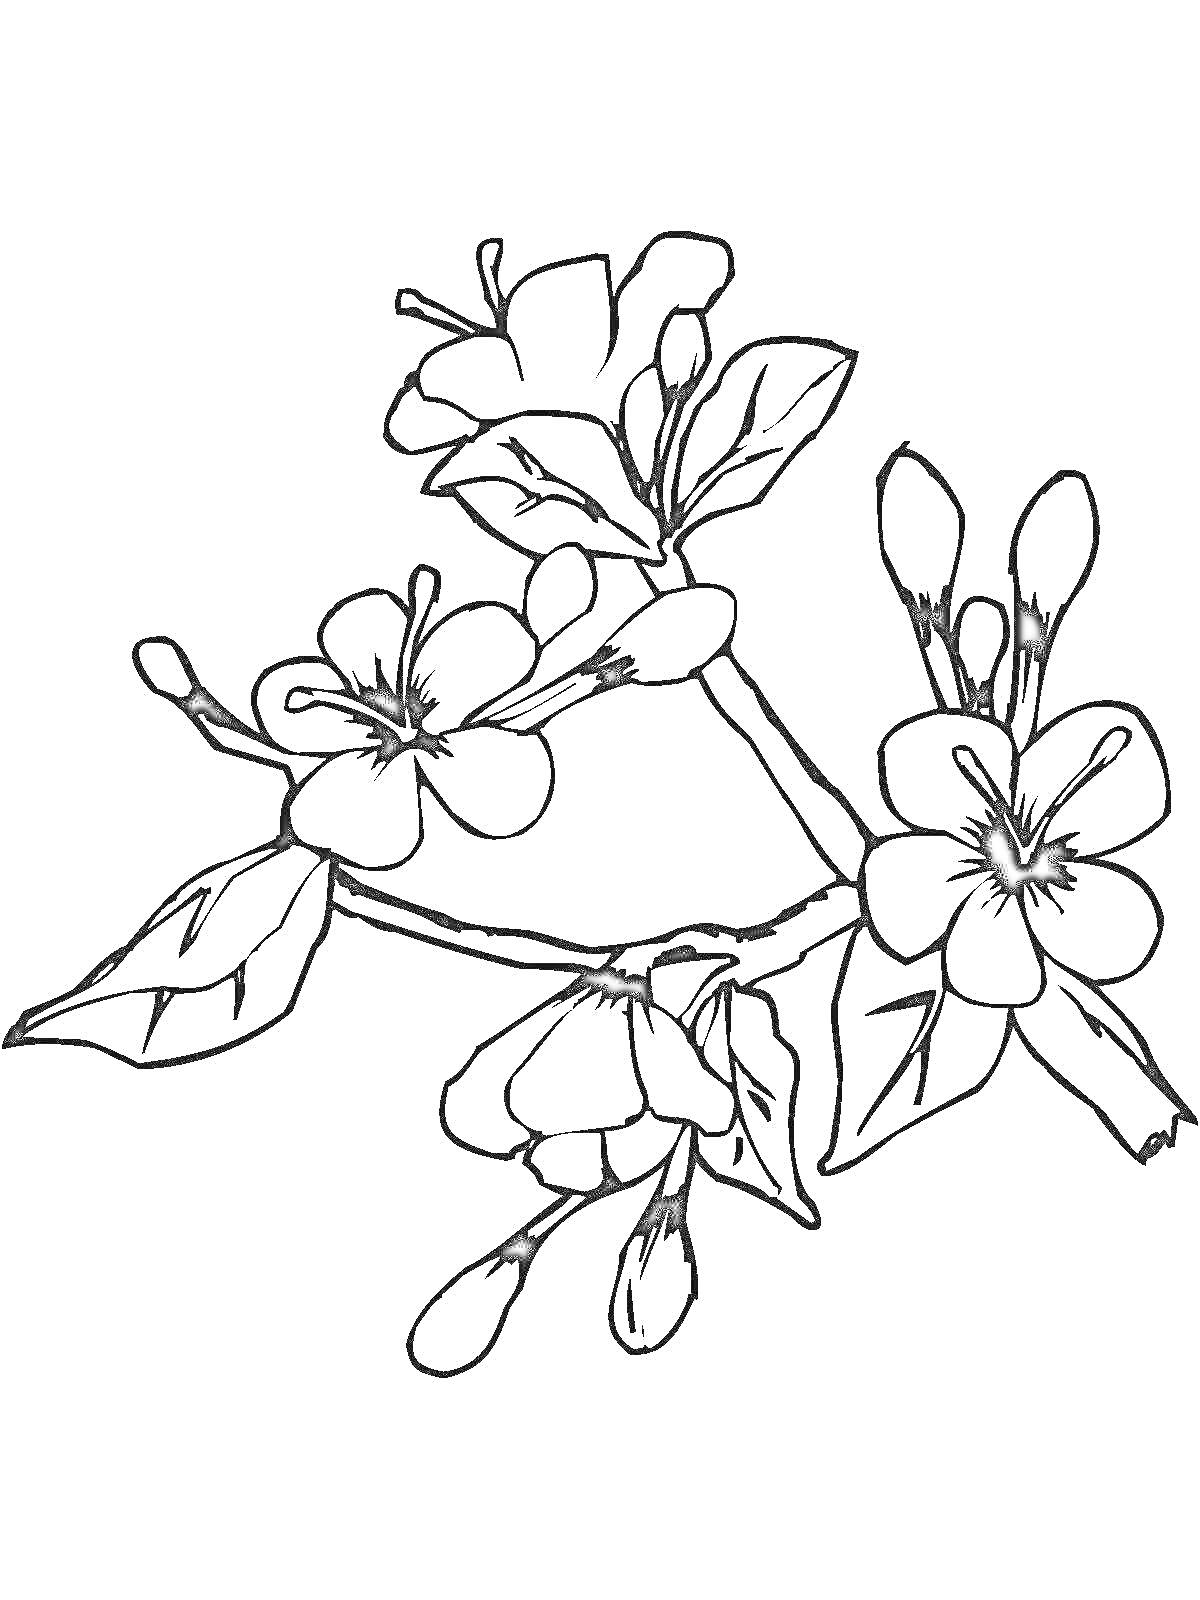 Раскраска Ветвь сакуры с цветами и листьями